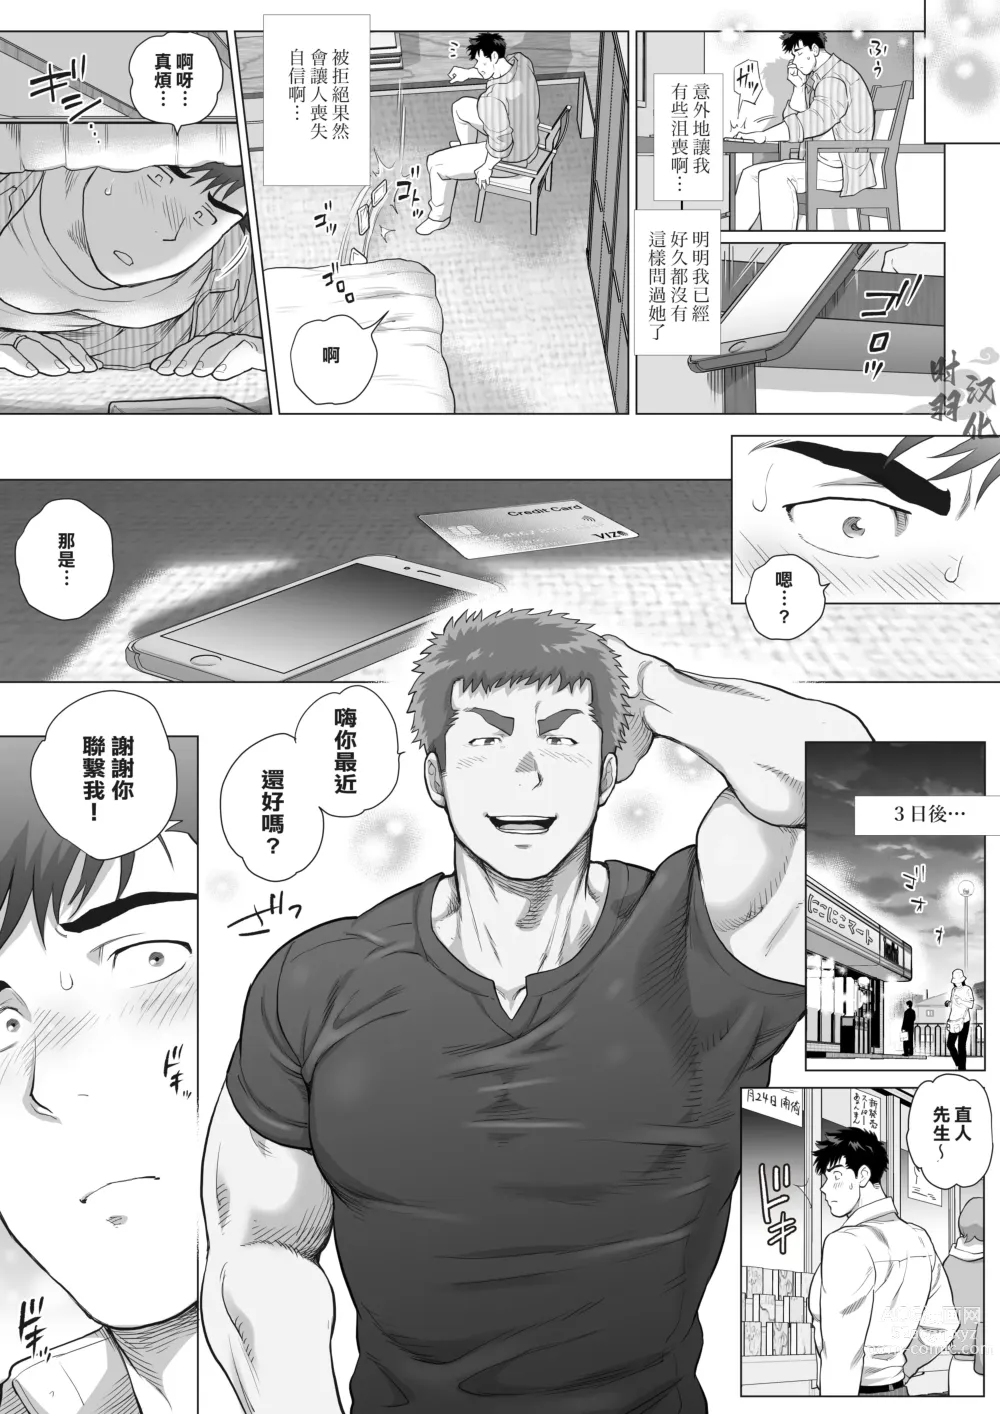 Page 6 of manga 直人爸爸与友幸爸爸 第三话